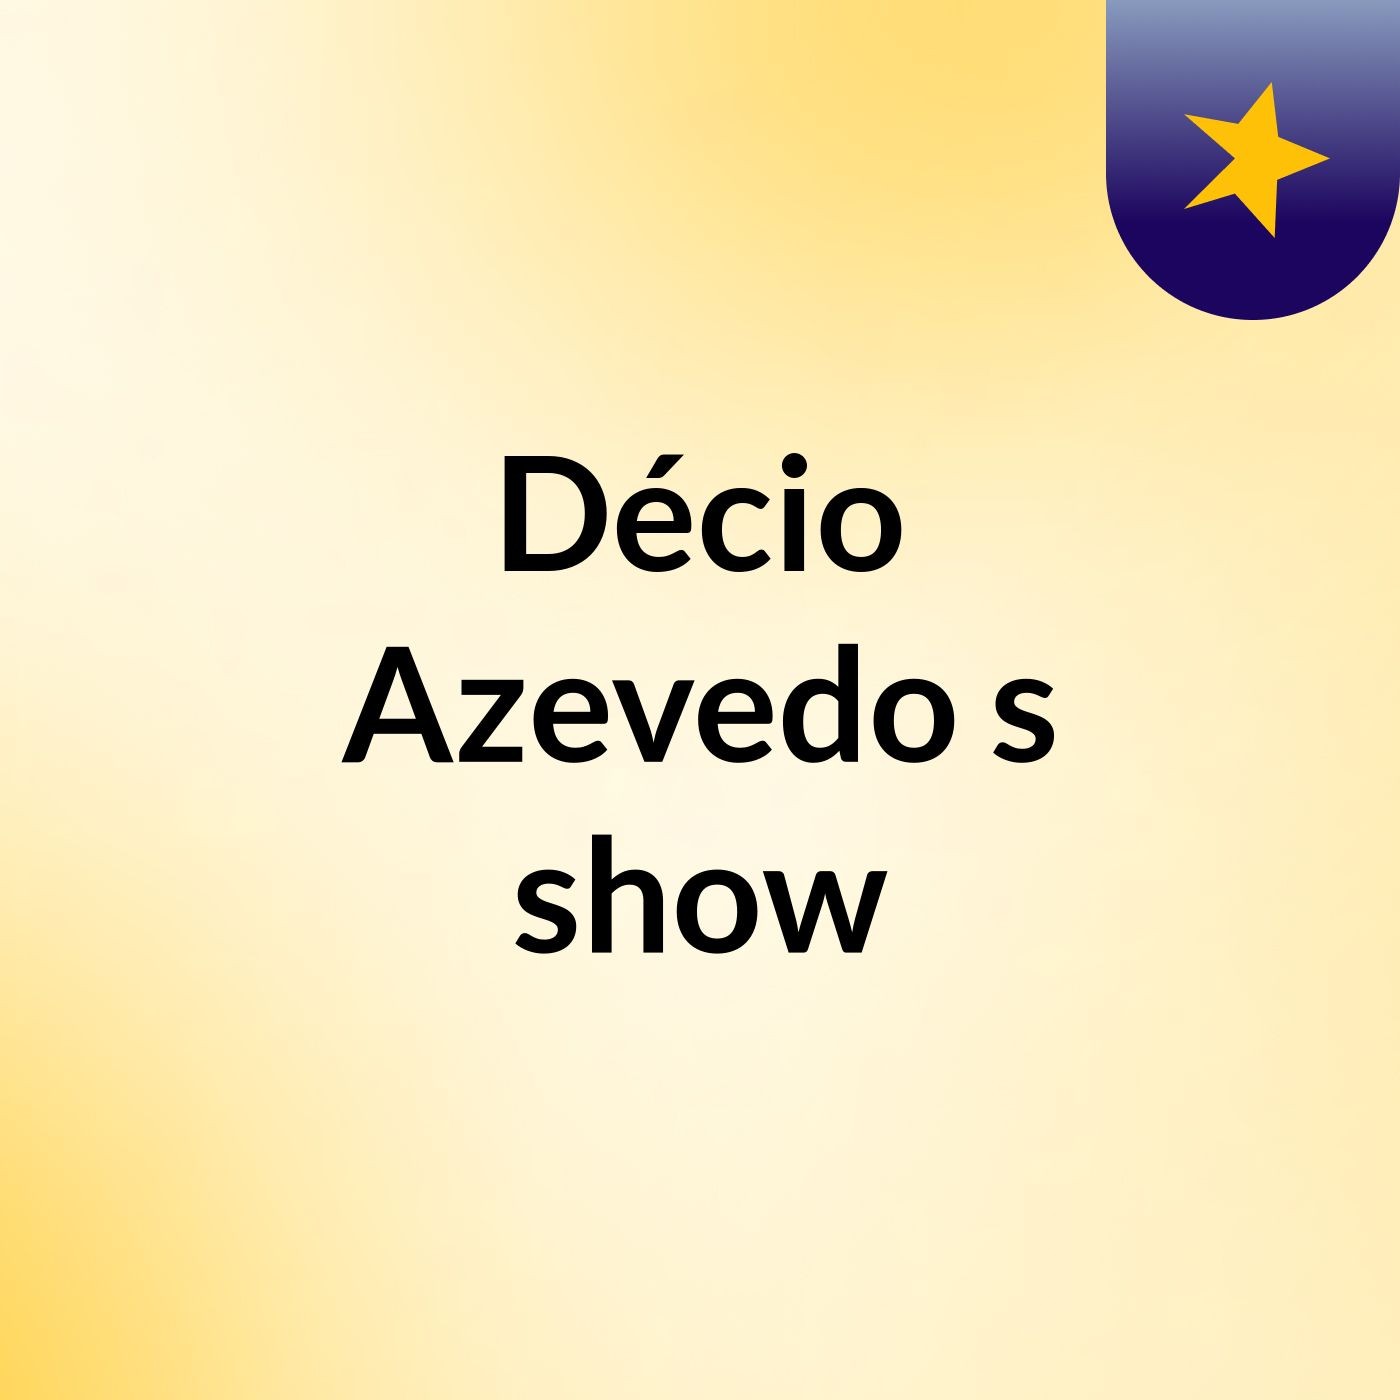 Décio Azevedo's show